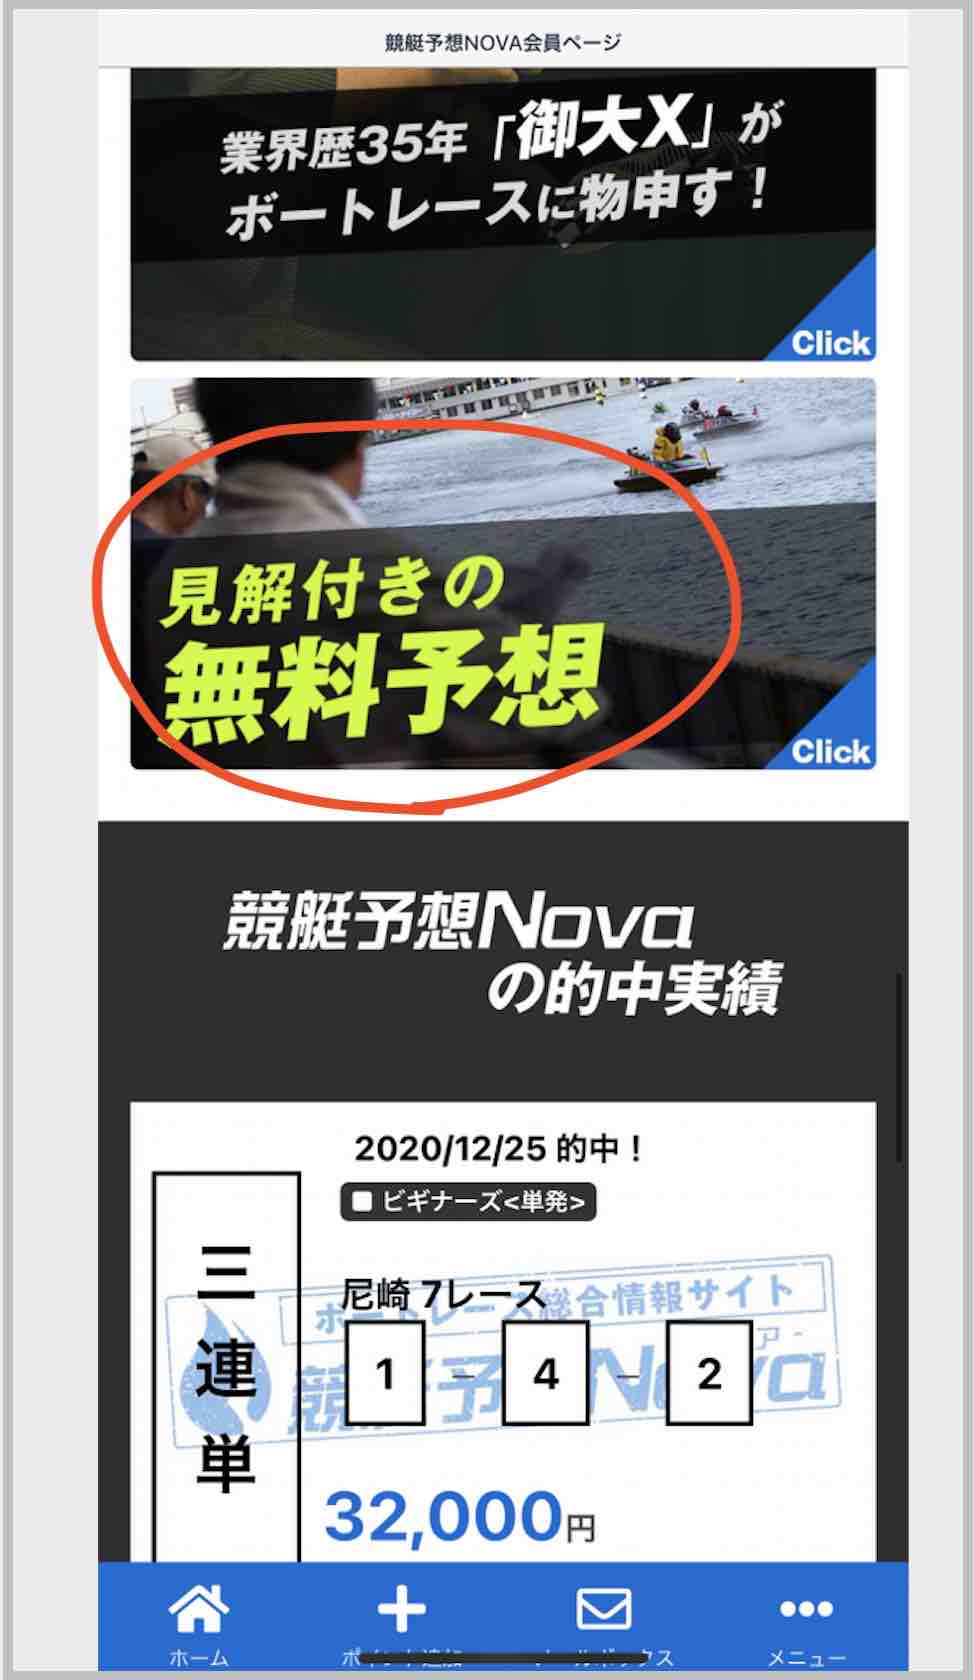 競艇予想NOVA(ノヴァ)という競艇予想サイト(ボートレース予想サイト)の無料予想(無料情報)を確認する